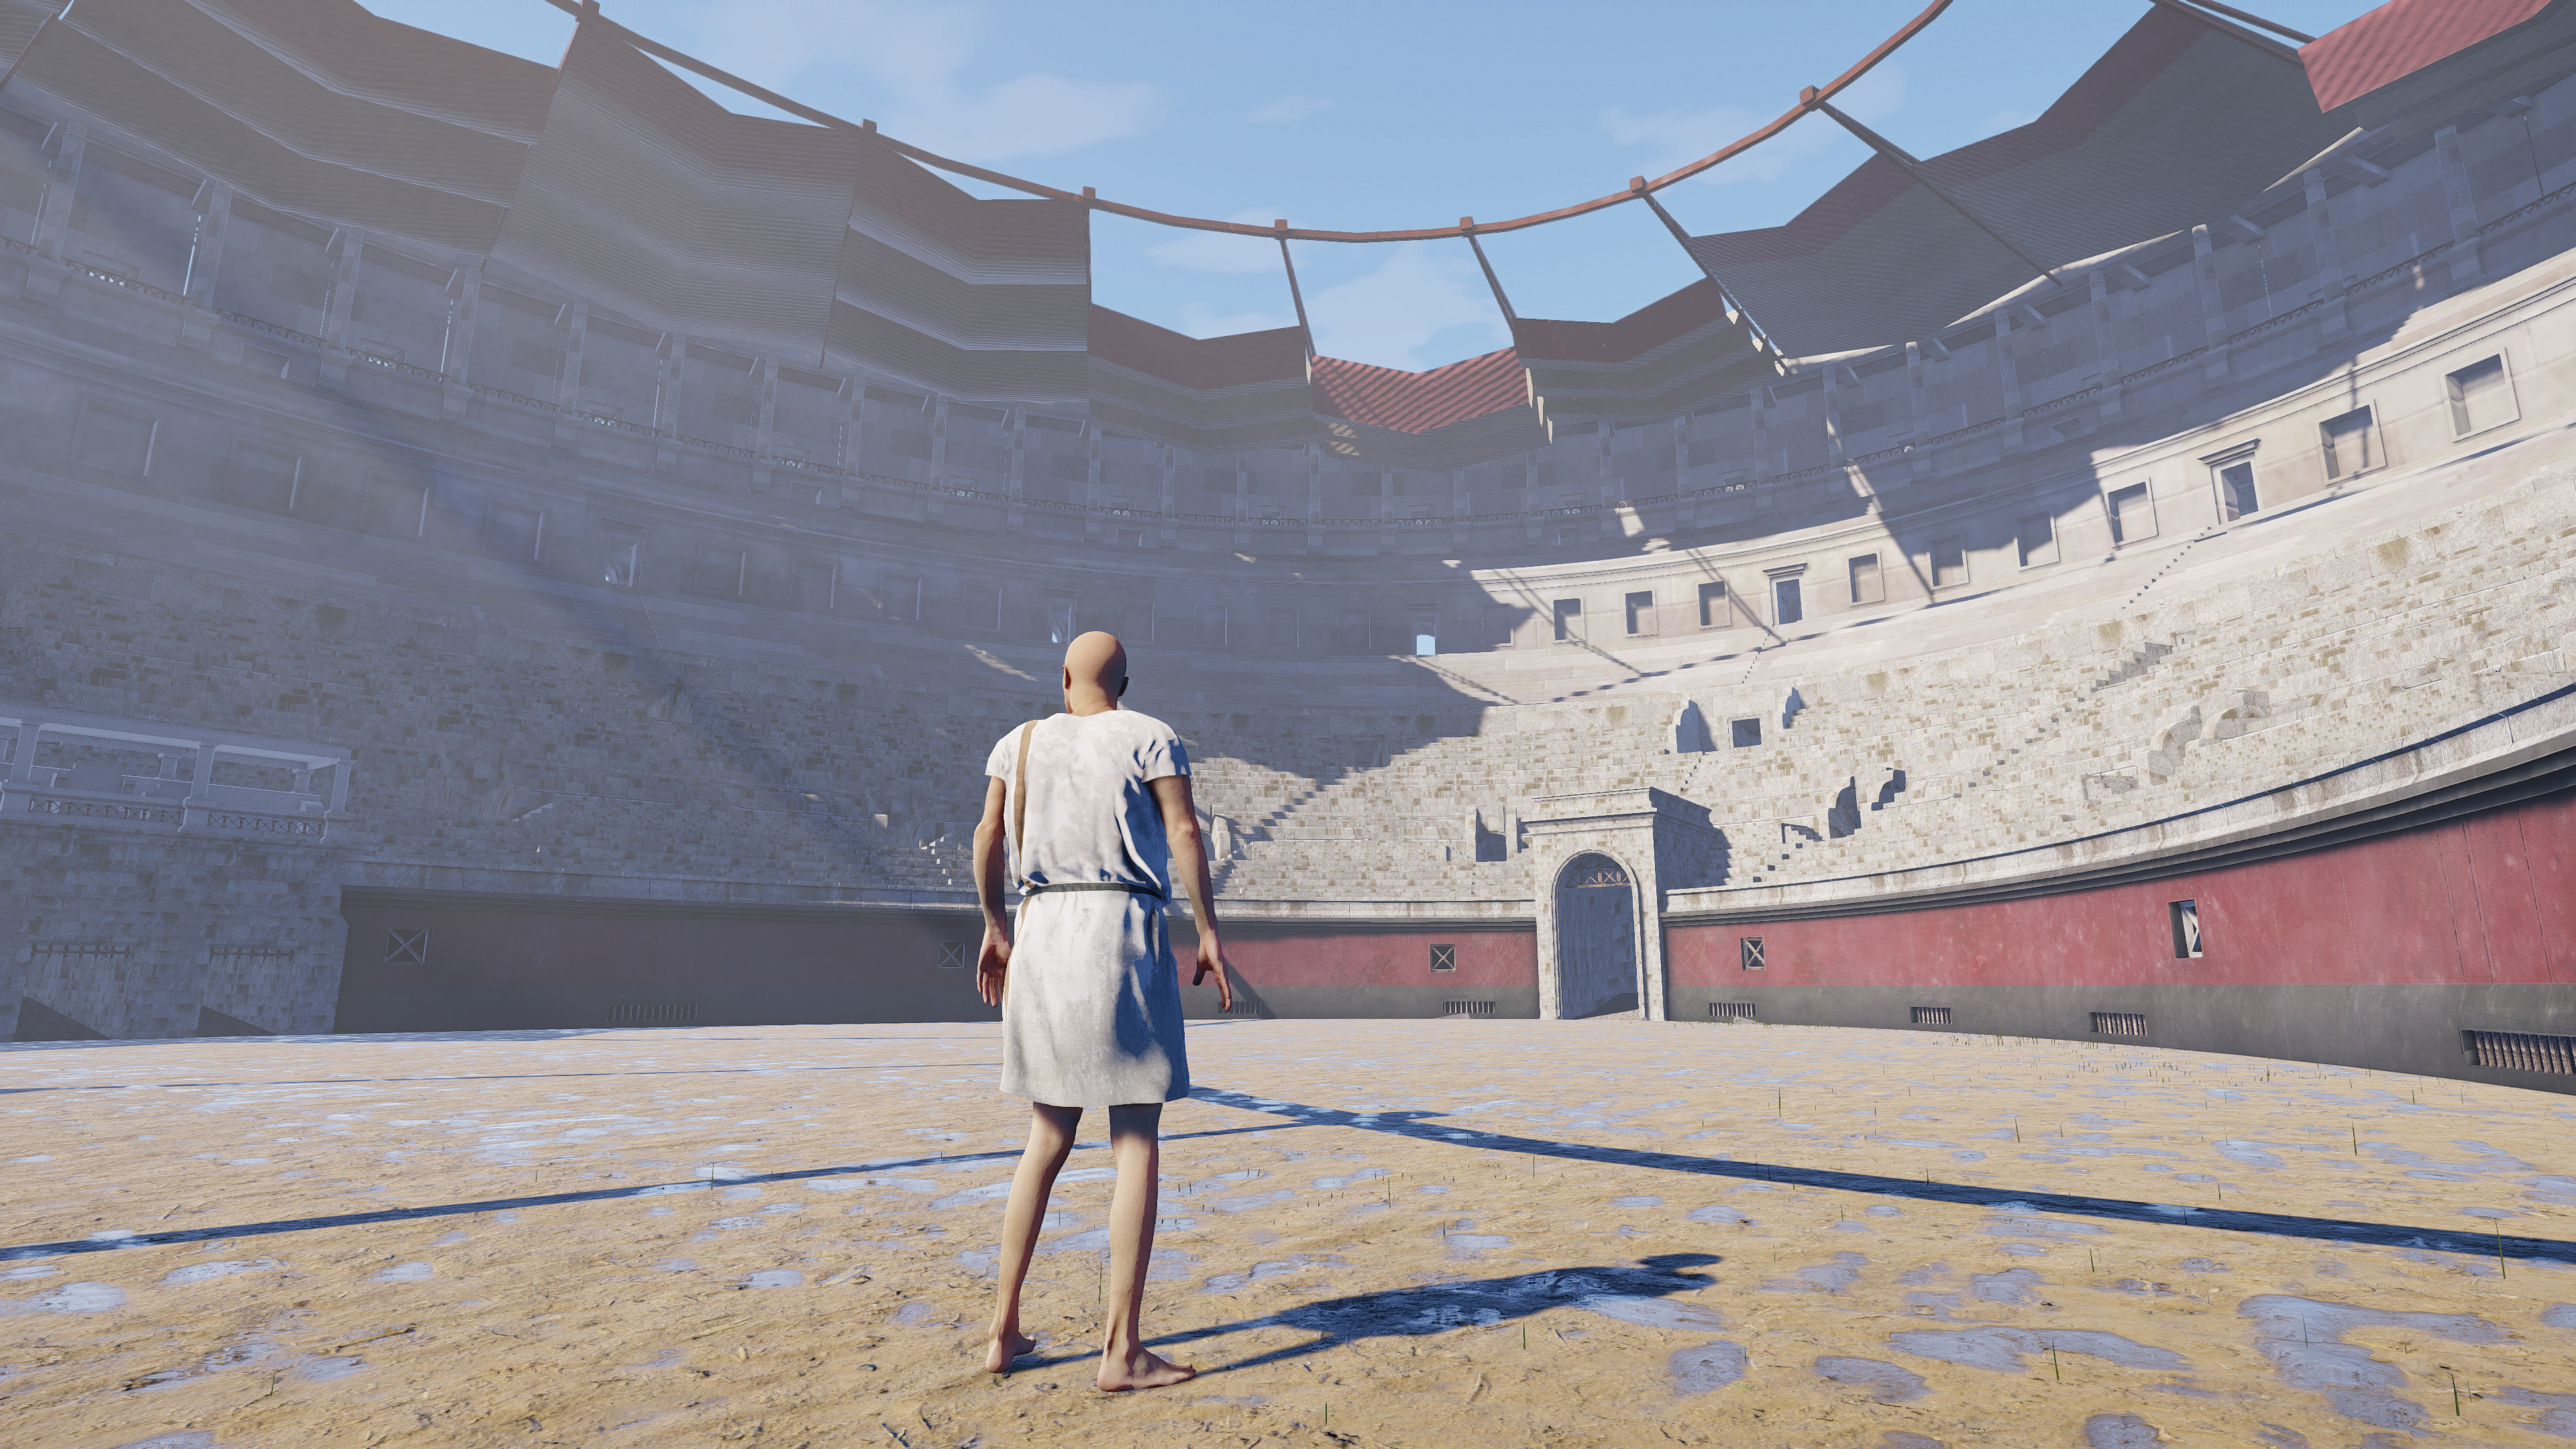 Life of Rome screenshot